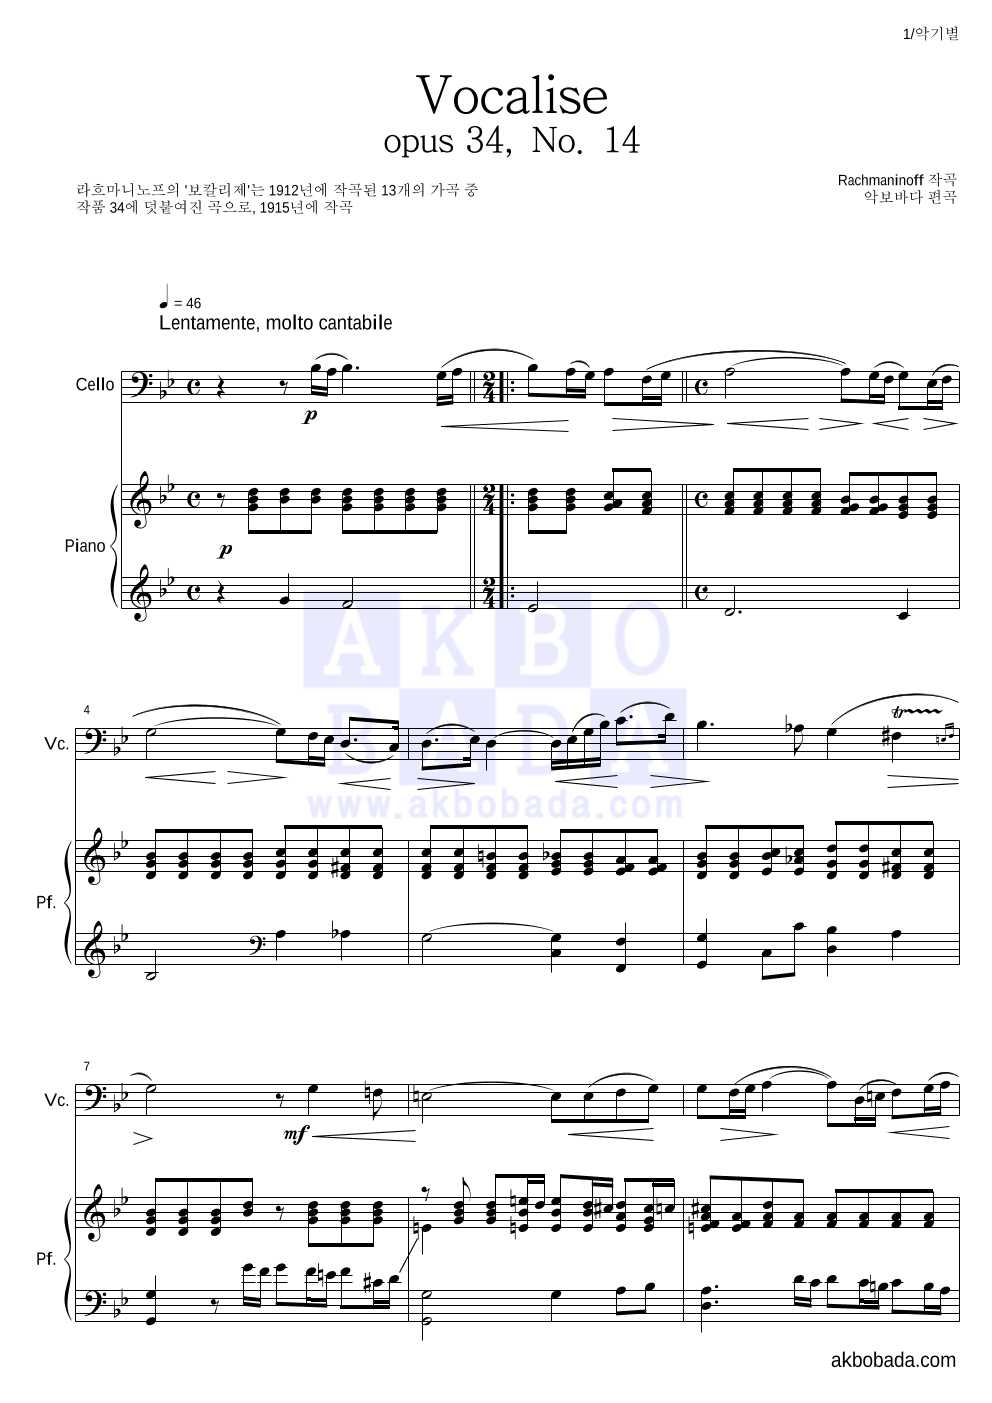 라흐마니노프 - 보칼리제(Vocalise) 첼로&피아노 악보 